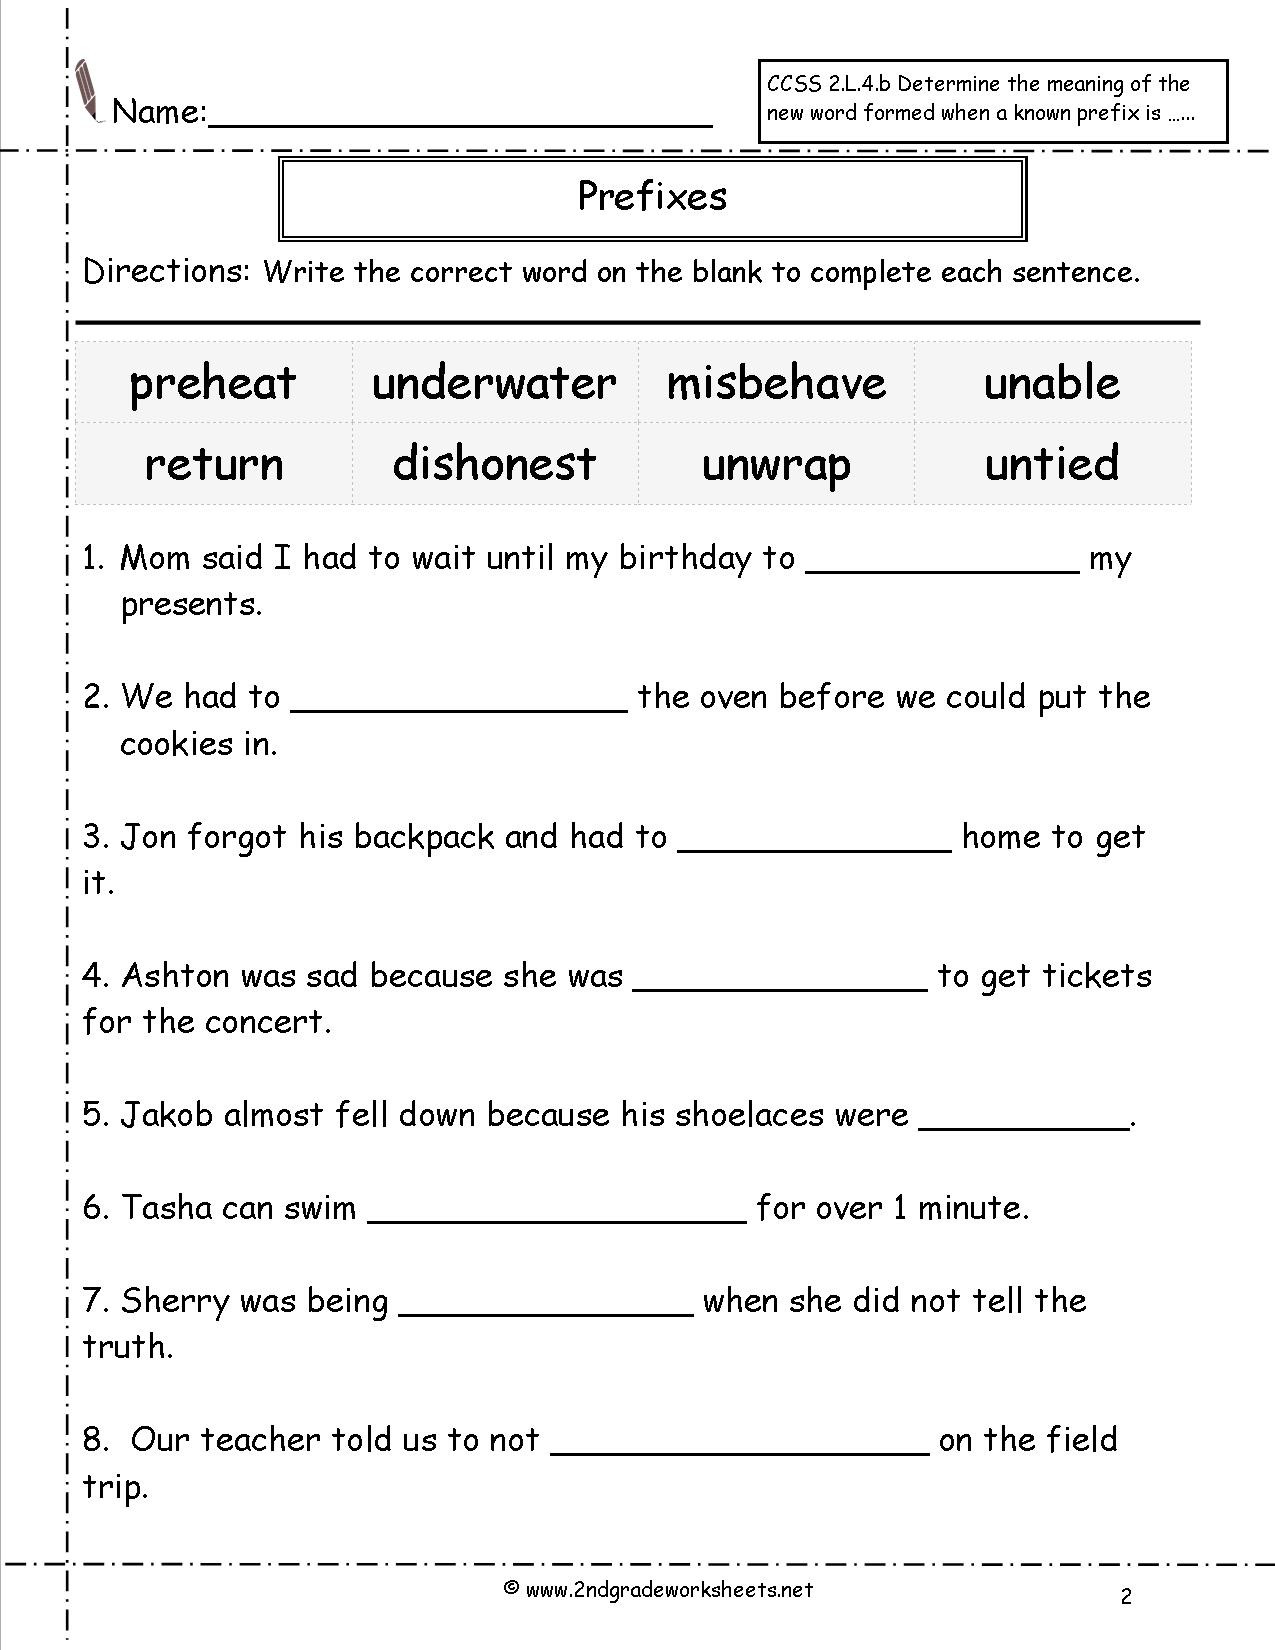 Prefixes Worksheet 3rd Grade Second Grade Prefixes Worksheets Prefix 2nd